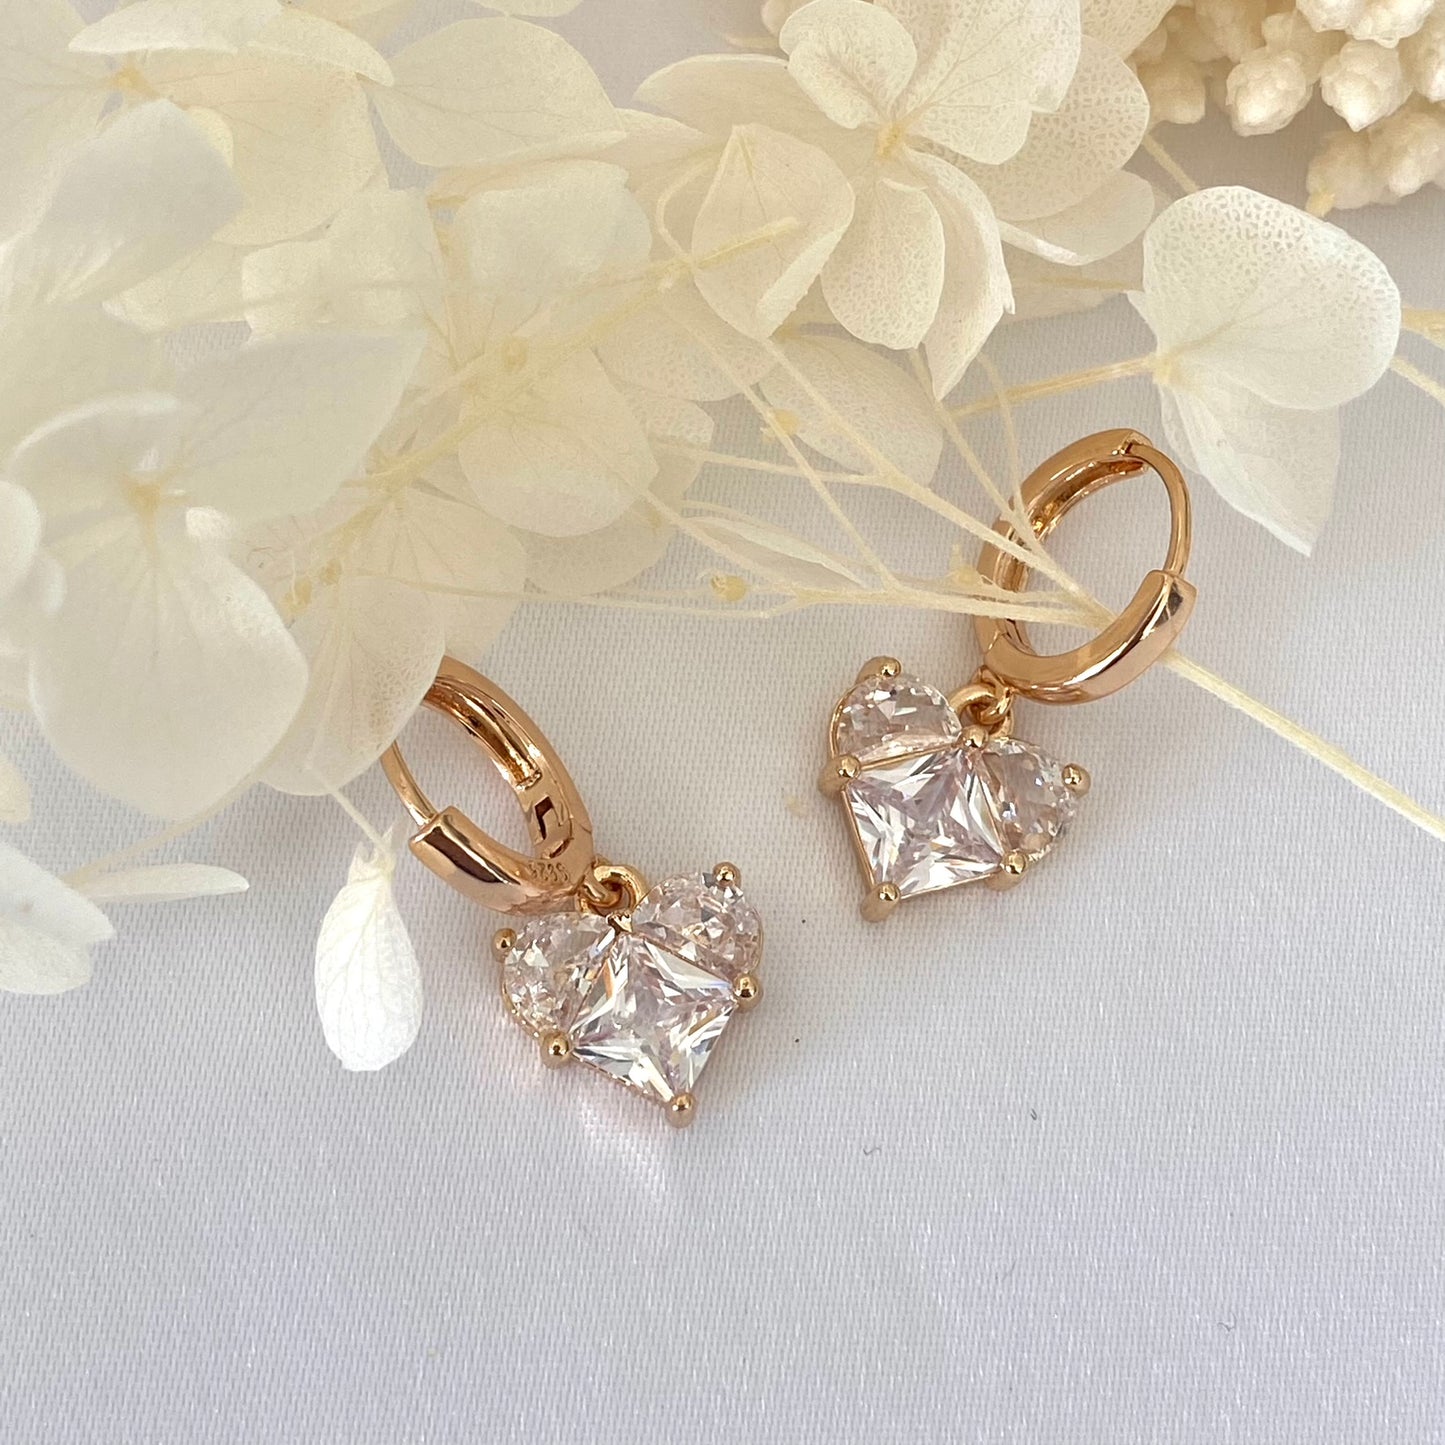 Handmade Love Heart Earrings Champagne Gold